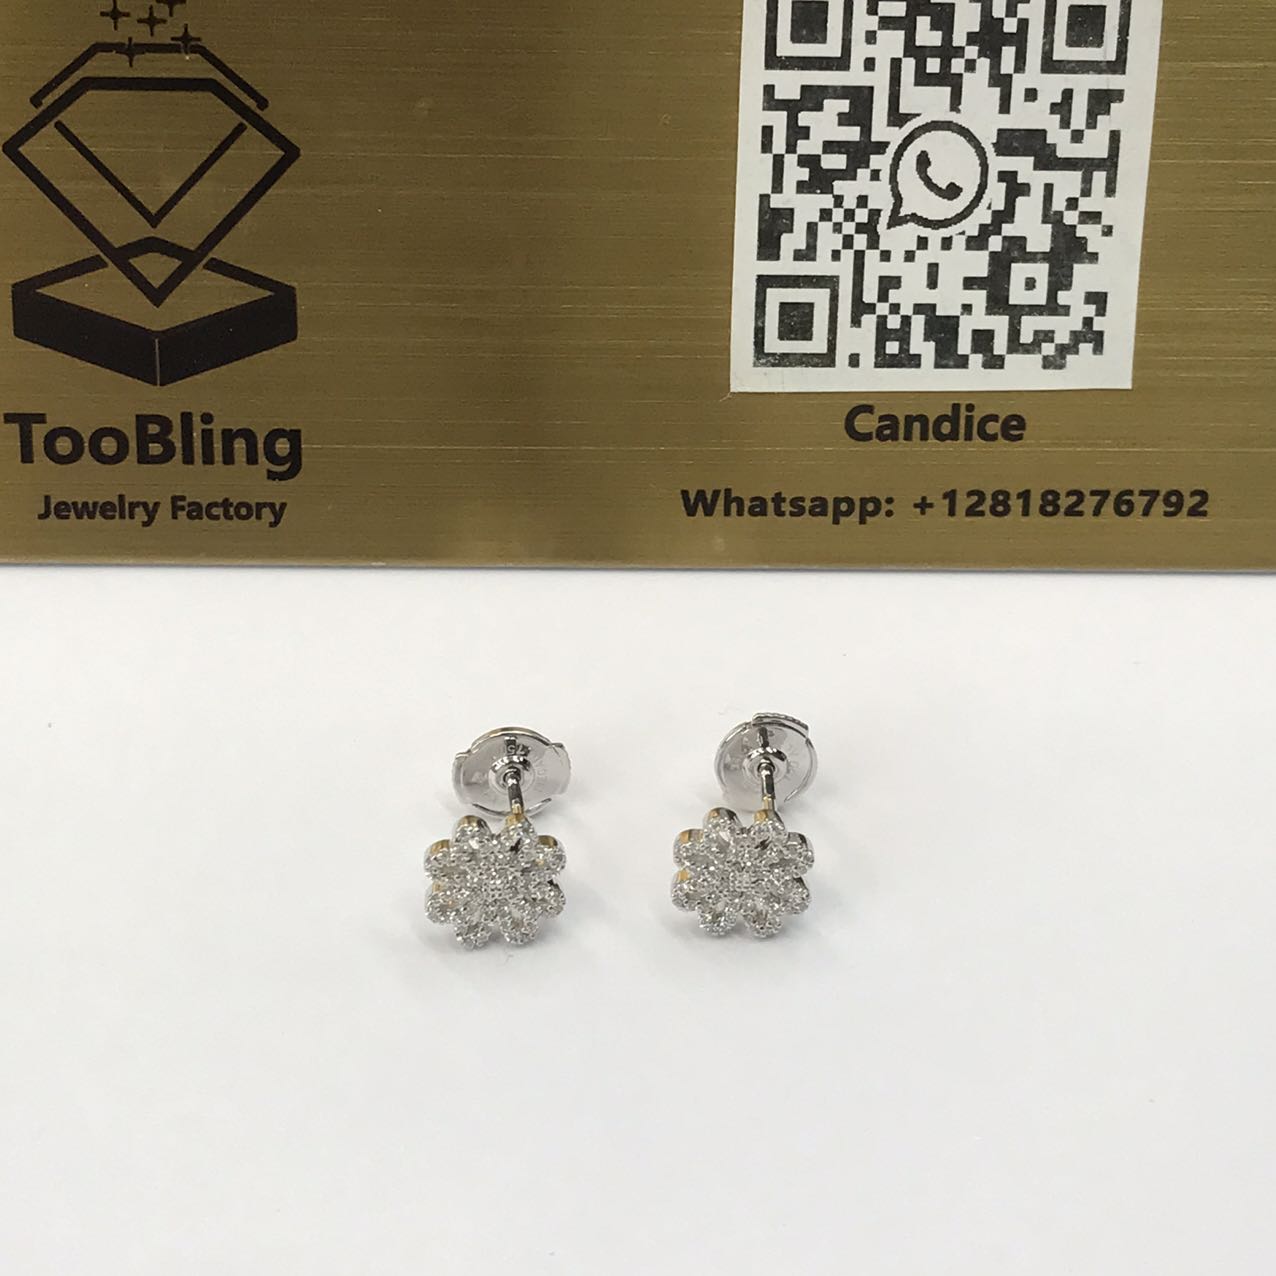 Four Leaves Clover Diamond Earrings 18K White Gold Au750 Earring Studs